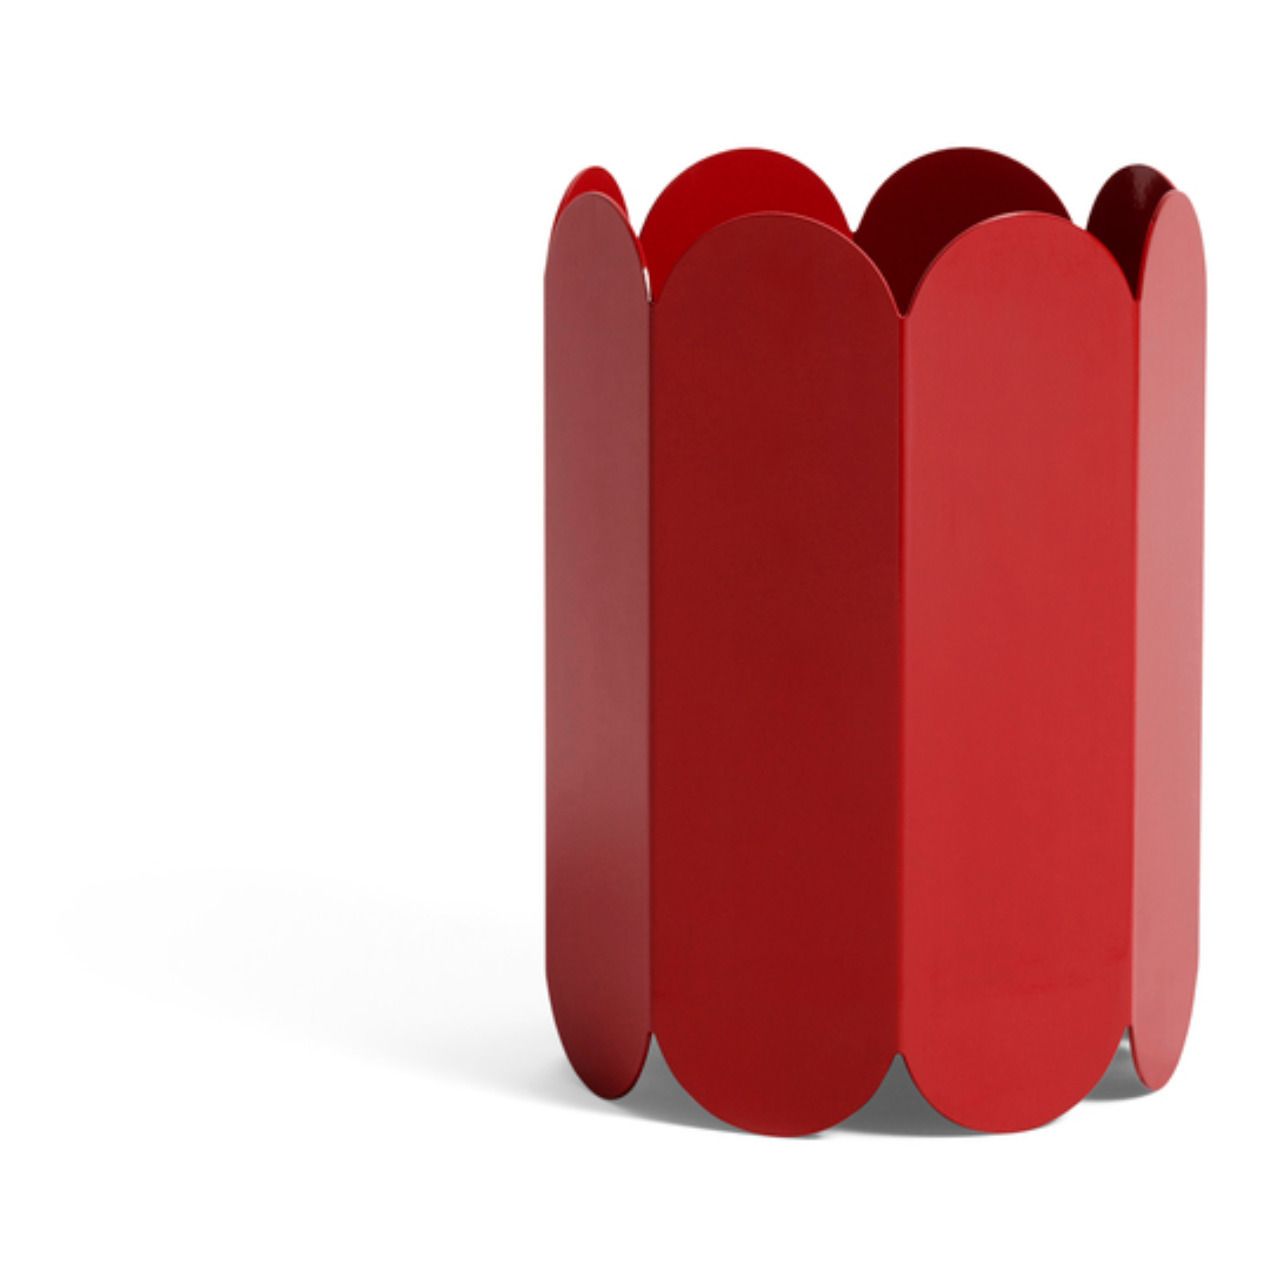 Hay - Vase Arcs en acier inoxidable - Rouge